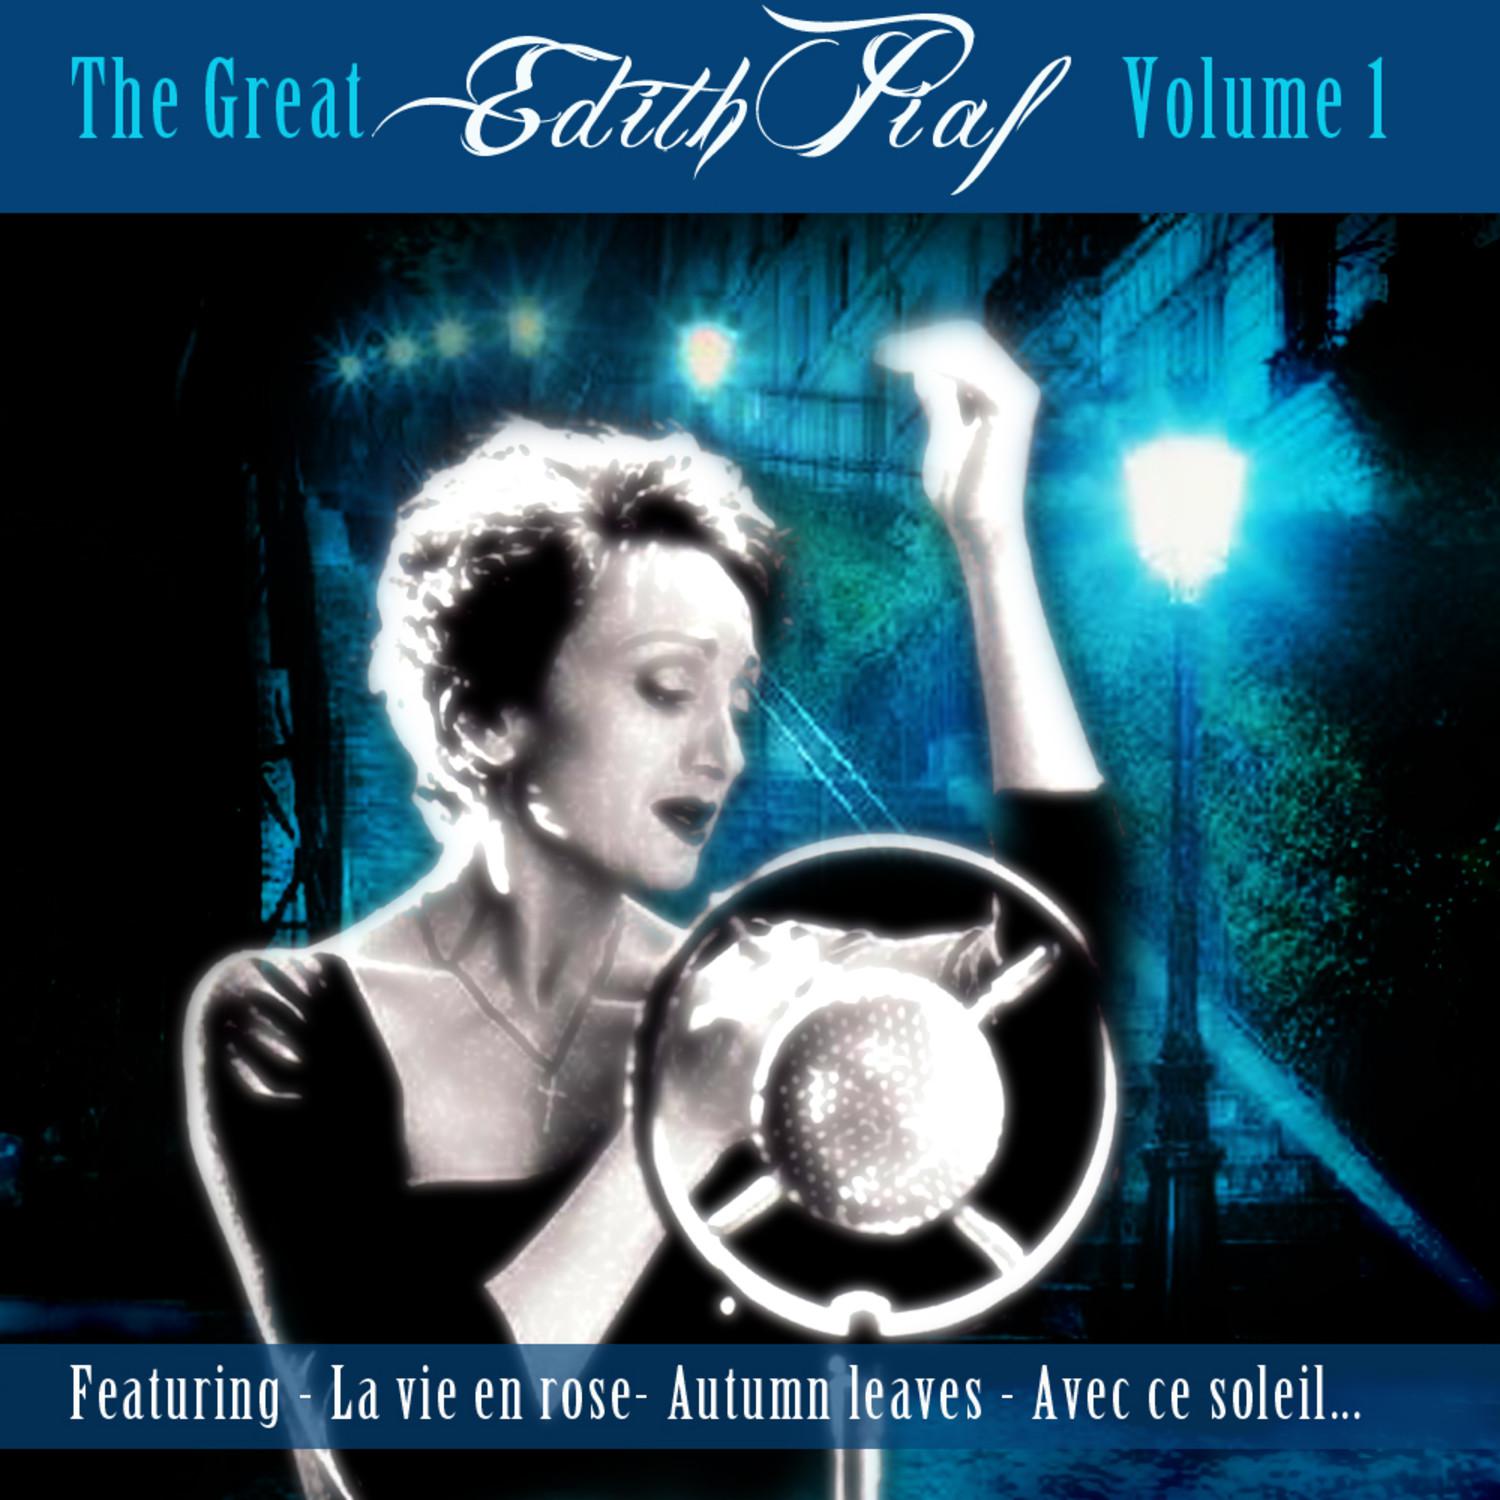 The Great Edith Piaf Vol1